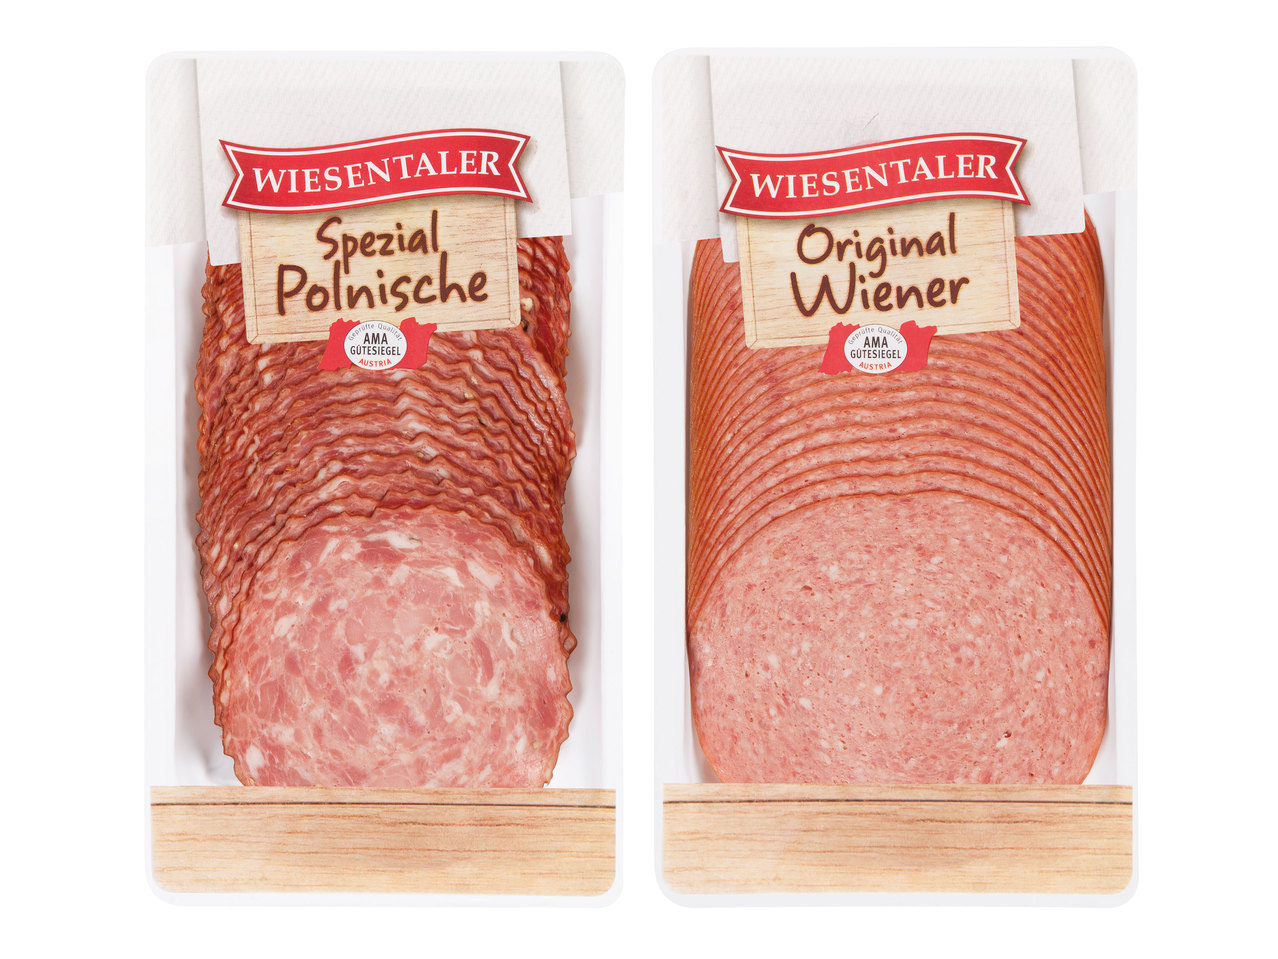 WIESENTALER Polnische/Wiener